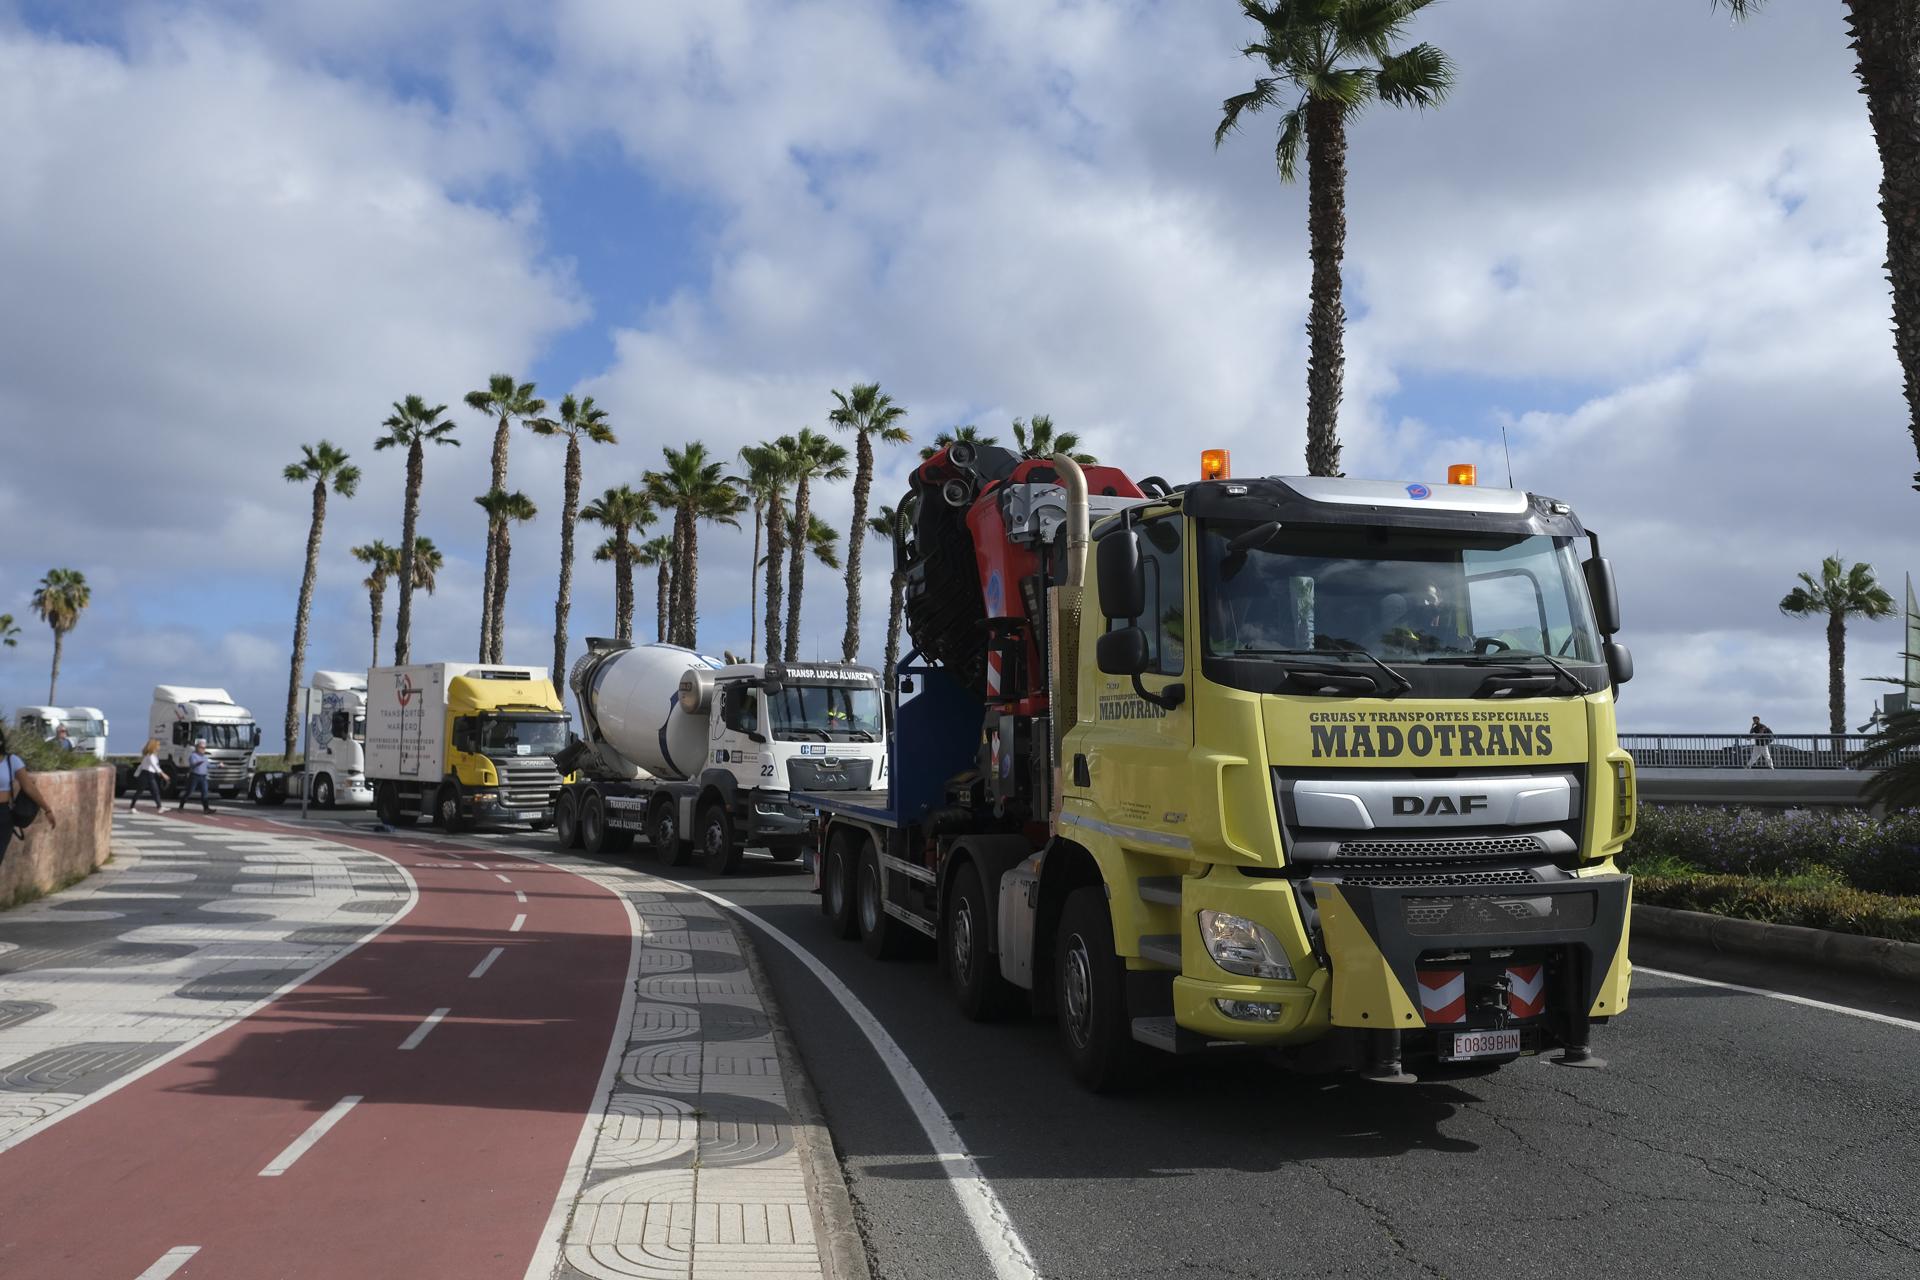 Una caravana de 50 camiones ha recorrido este lunes las calles de Las Palmas de Gran Canaria para reclamar limitaciones en el uso del tacógrafo en las islas. El sector del transporte por carretera de Gran Canaria celebra hoy una jornada de paro por este motivo. EFE/ Angel Medina G.